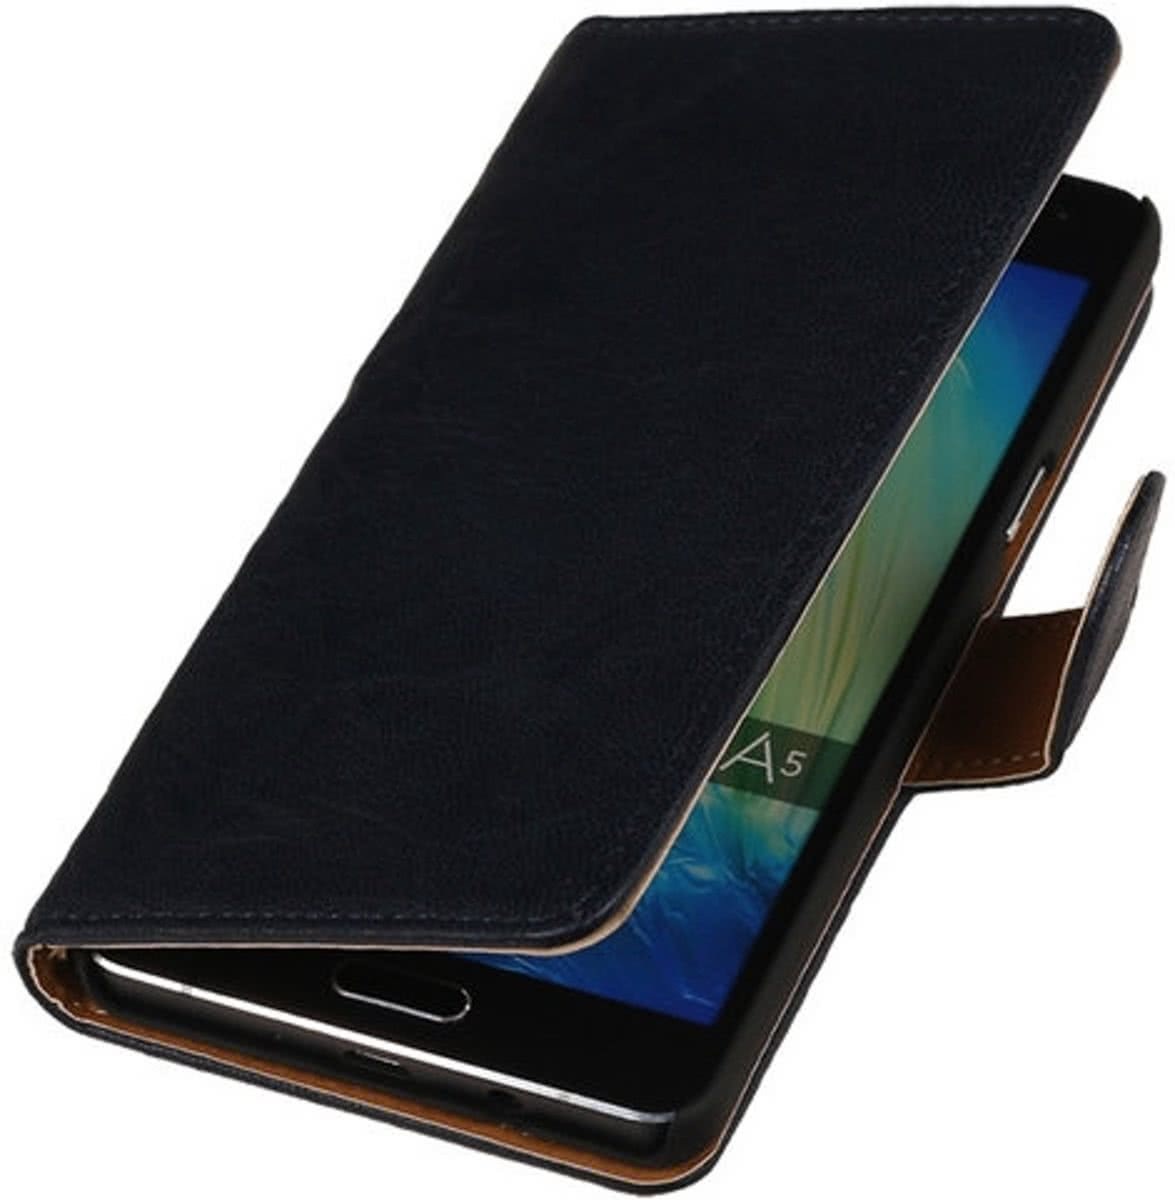 Best Cases Donker Blauw Echt Leer Booktype Samsung Galaxy J1 2015 Wallet Cover Hoesje Gratis verzending Gratis retourneren Bescherm uw telefoon